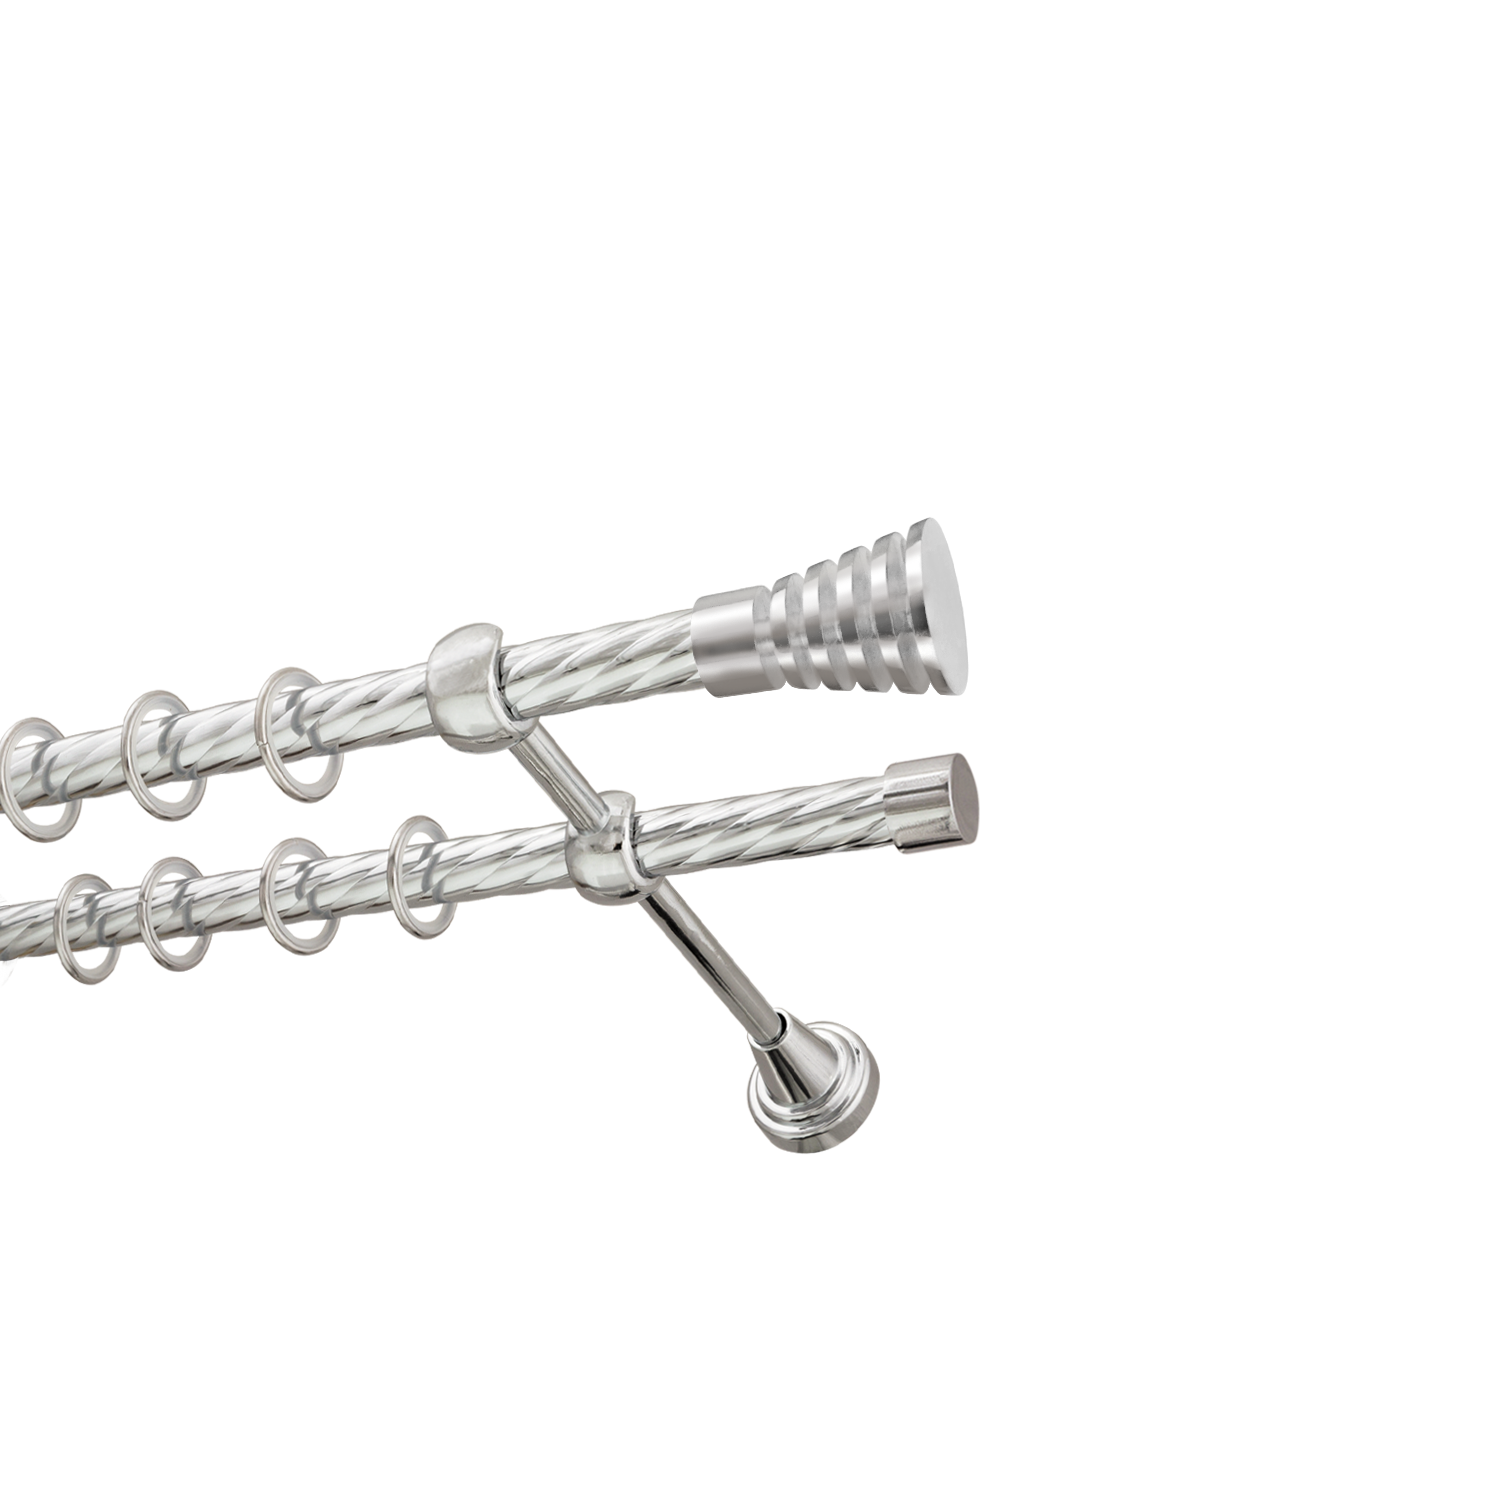 Металлический карниз для штор Верона, двухрядный 16/16 мм, серебро, витая штанга, длина 160 см